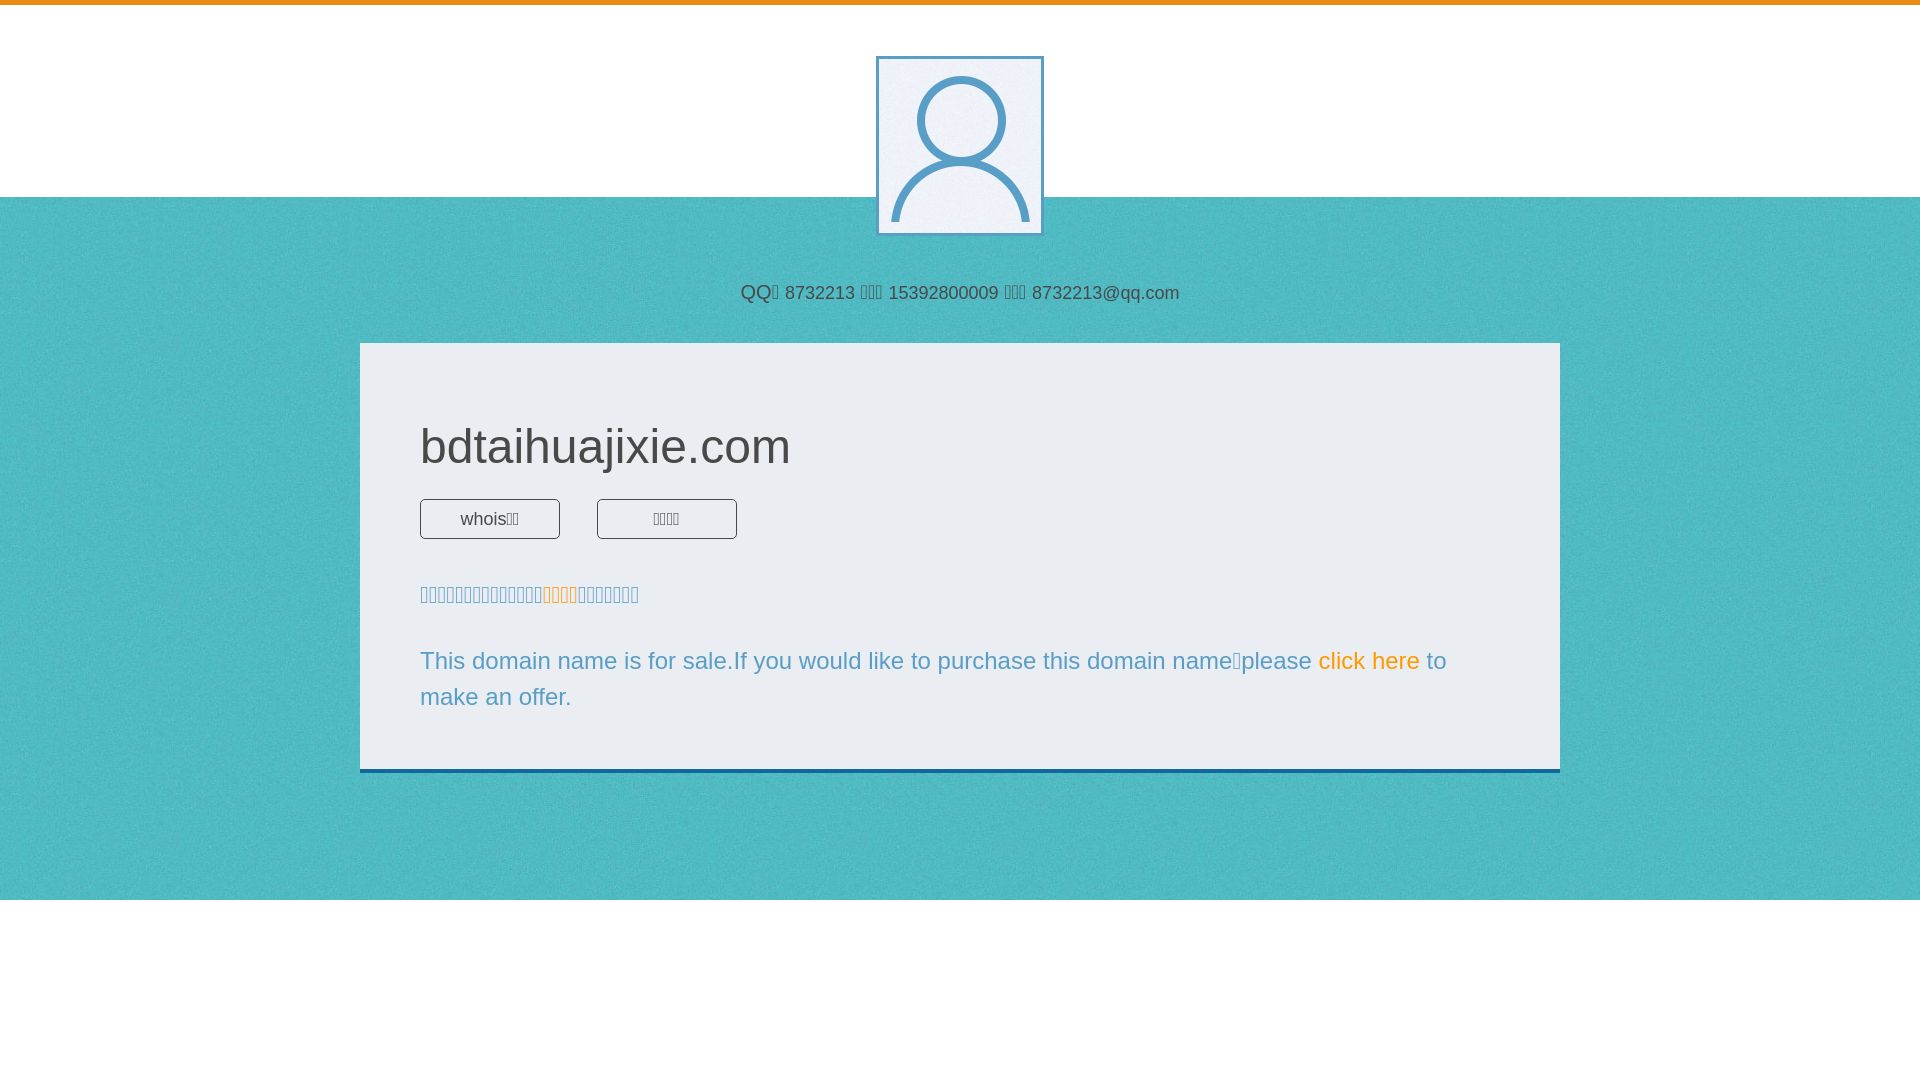 Stato del sito web bdtaihuajixie.com è   ONLINE